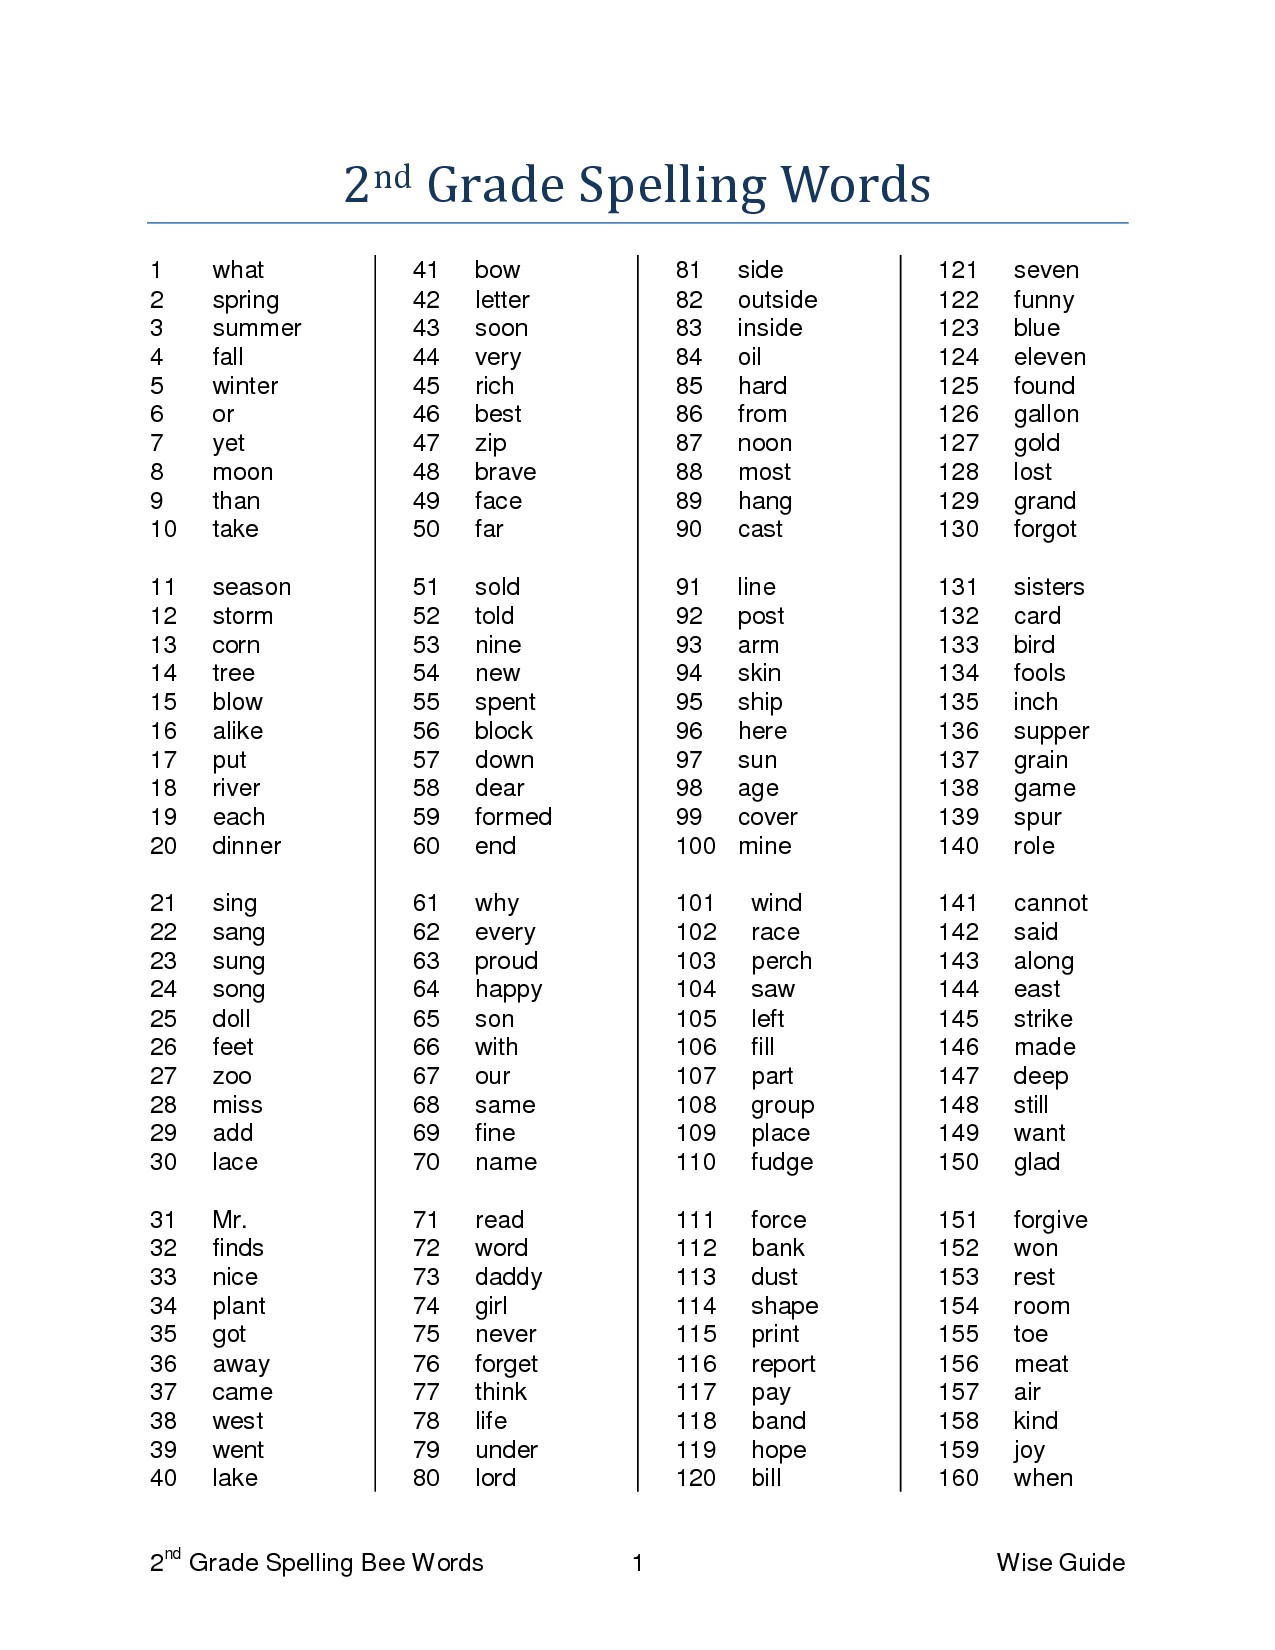 2nd Grade Spelling Words Free Printable